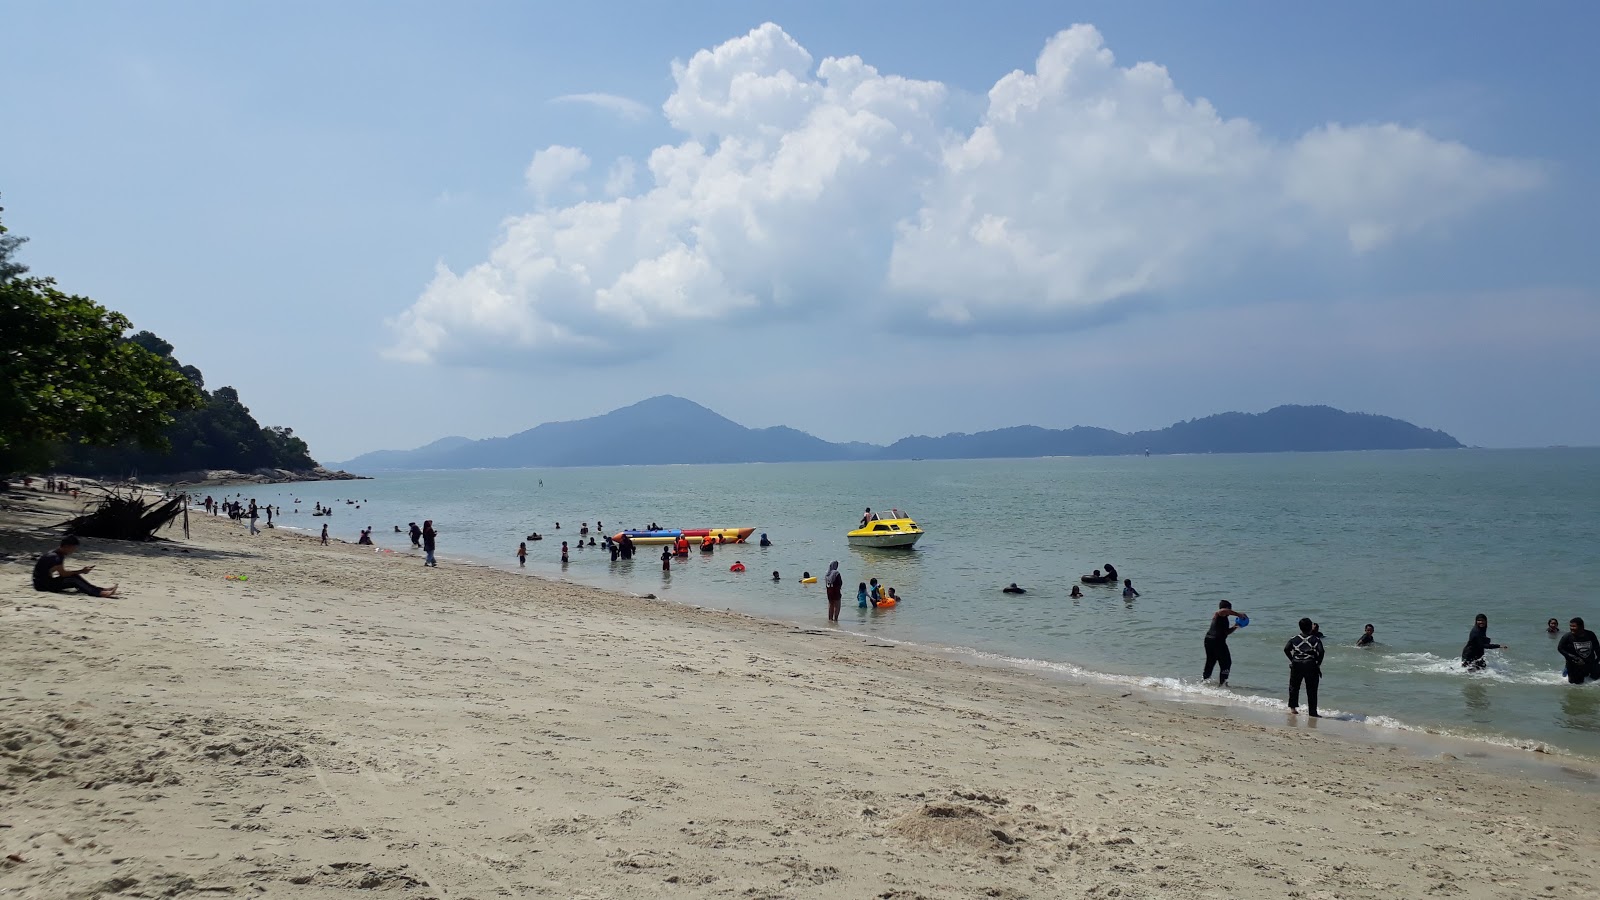 Teluk Senangin Beach'in fotoğrafı çok temiz temizlik seviyesi ile